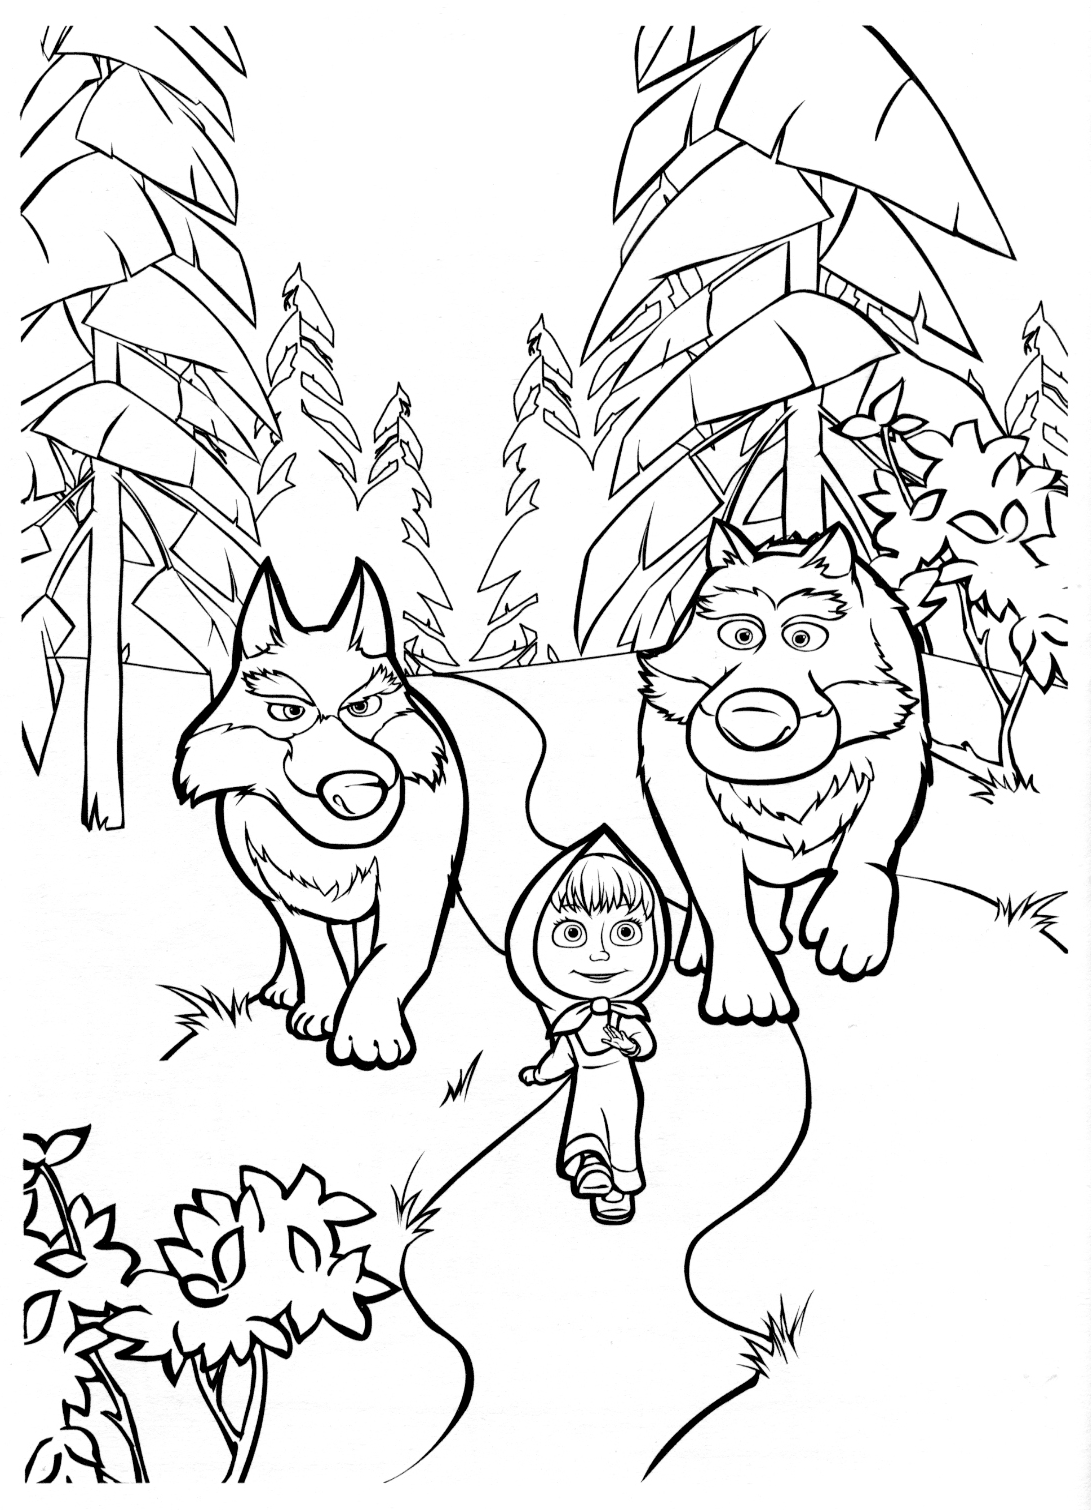 Рисунки для витражных красок из мульфильма маша и медведь. волки идут за машей 